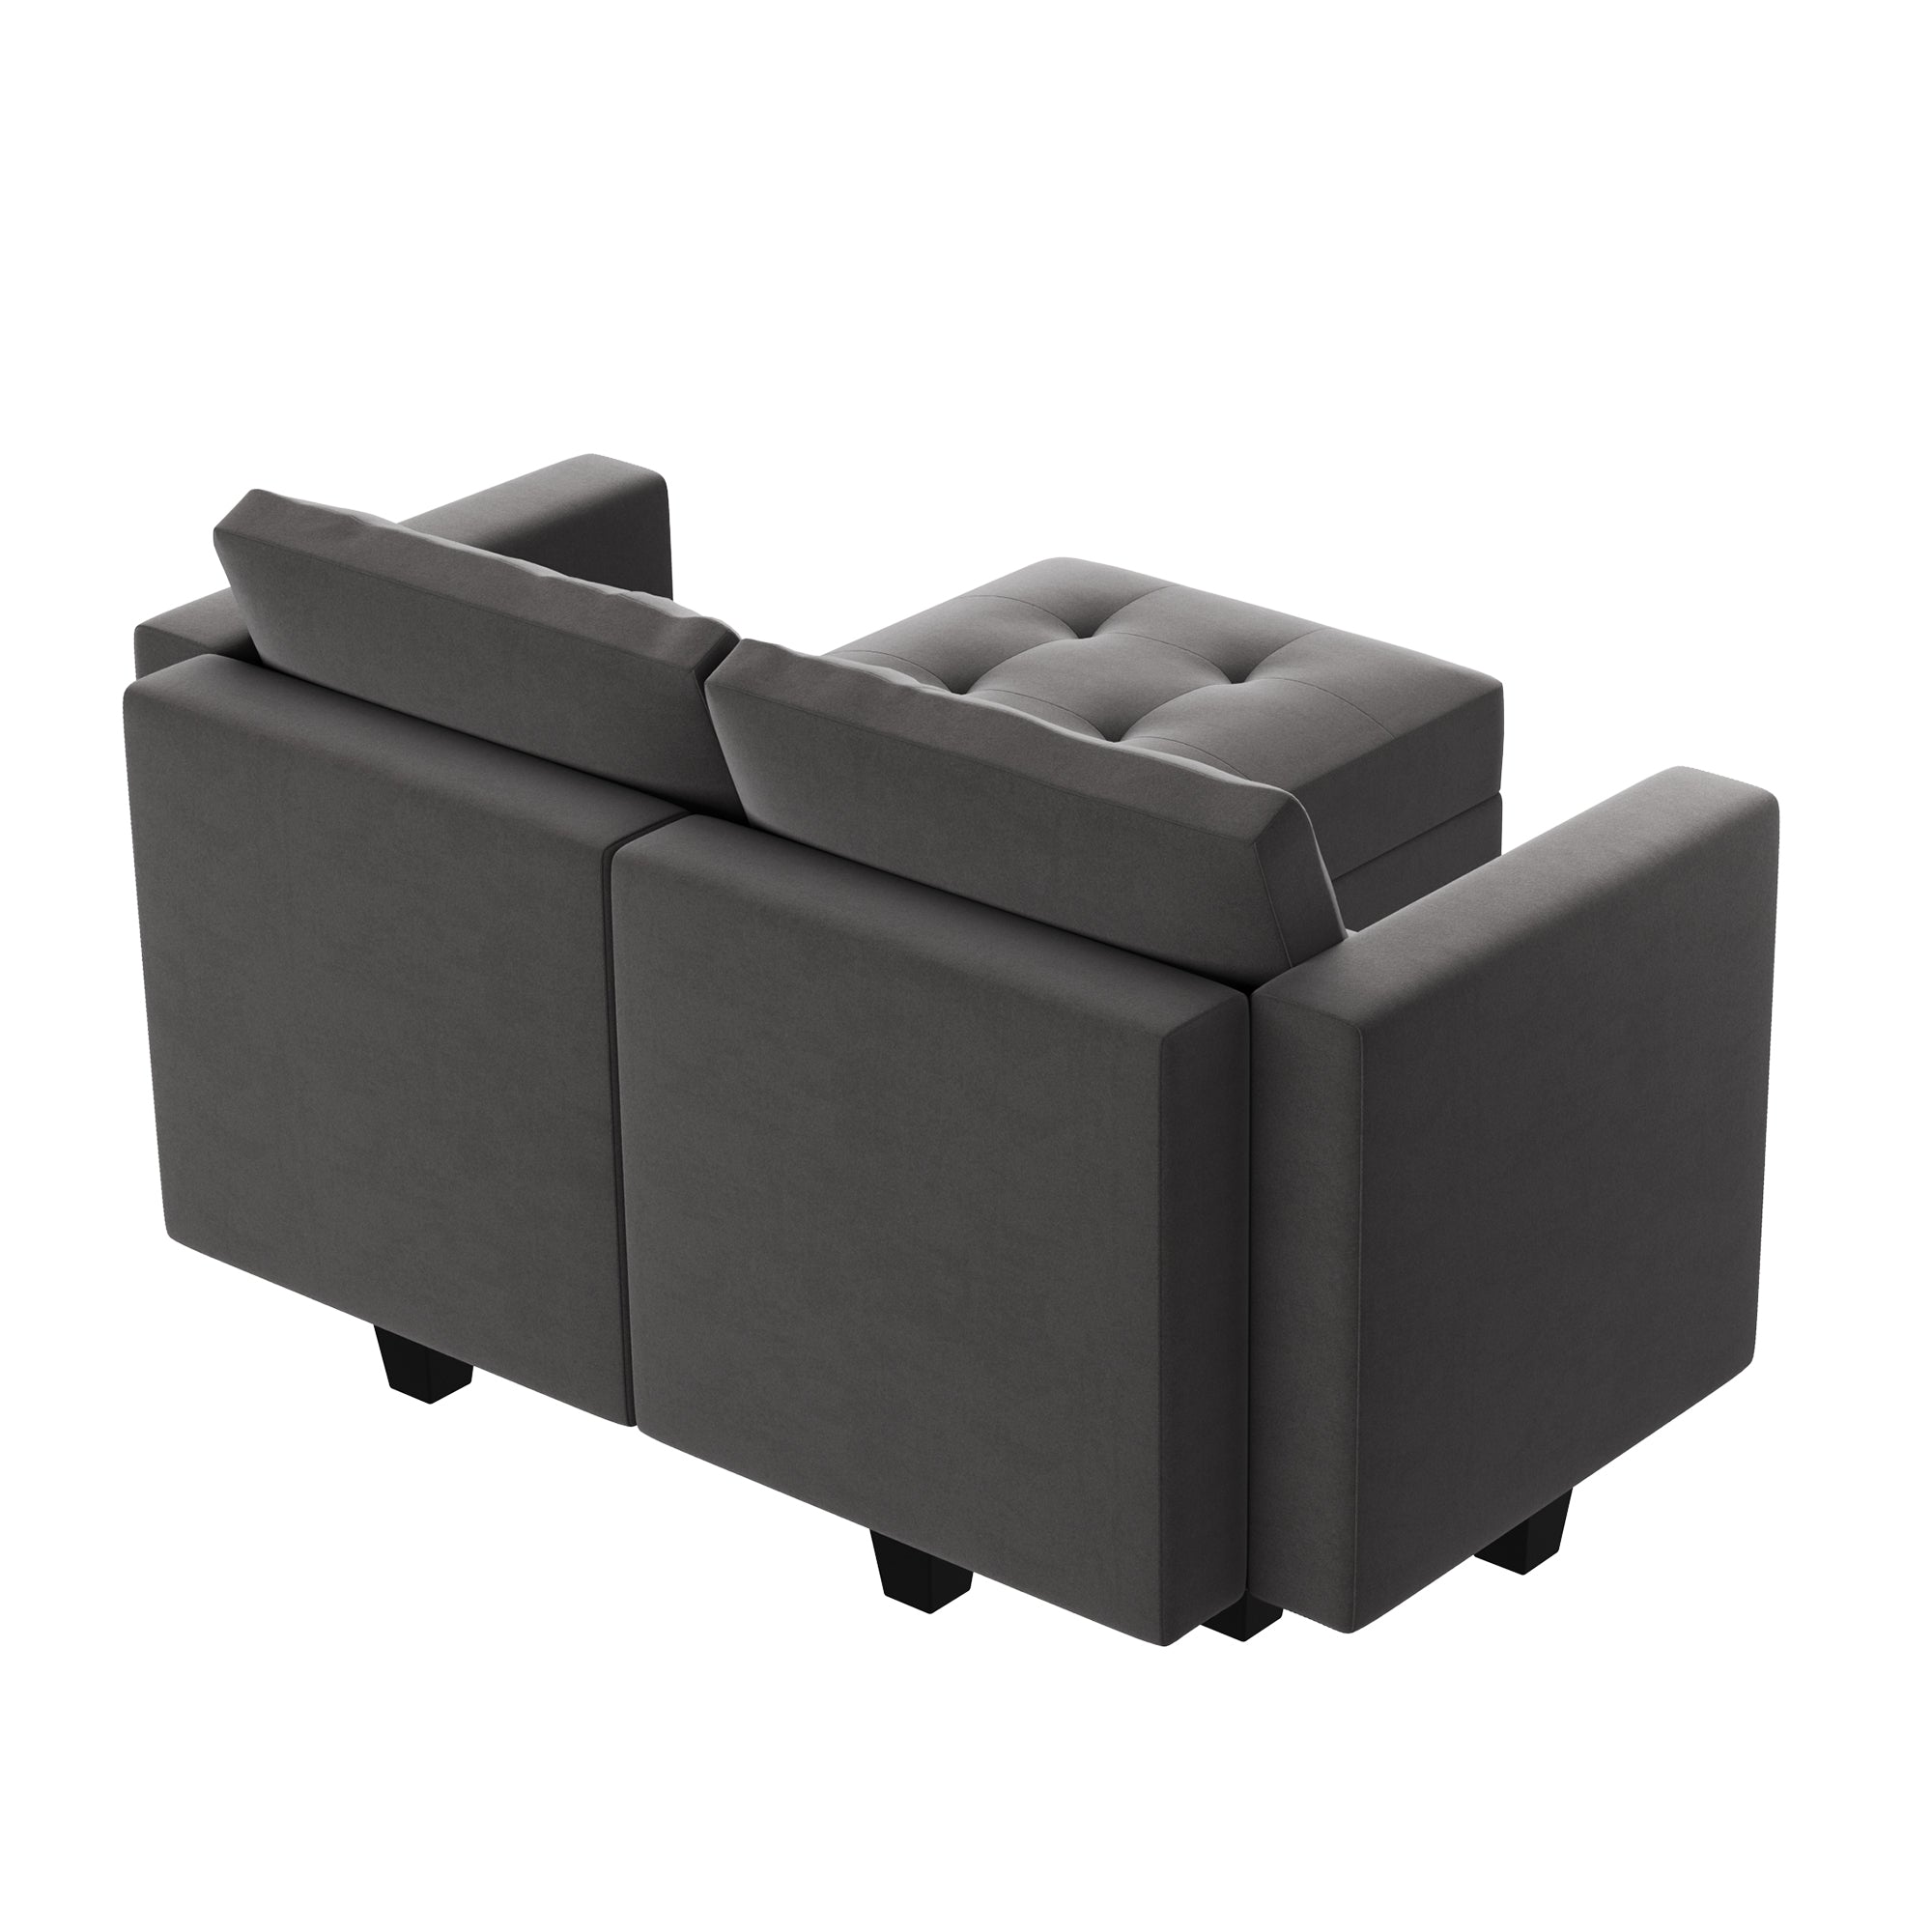 HONBAY Velvet Tufted Loveseat Modular Sofa with Reversible Storage Chaise